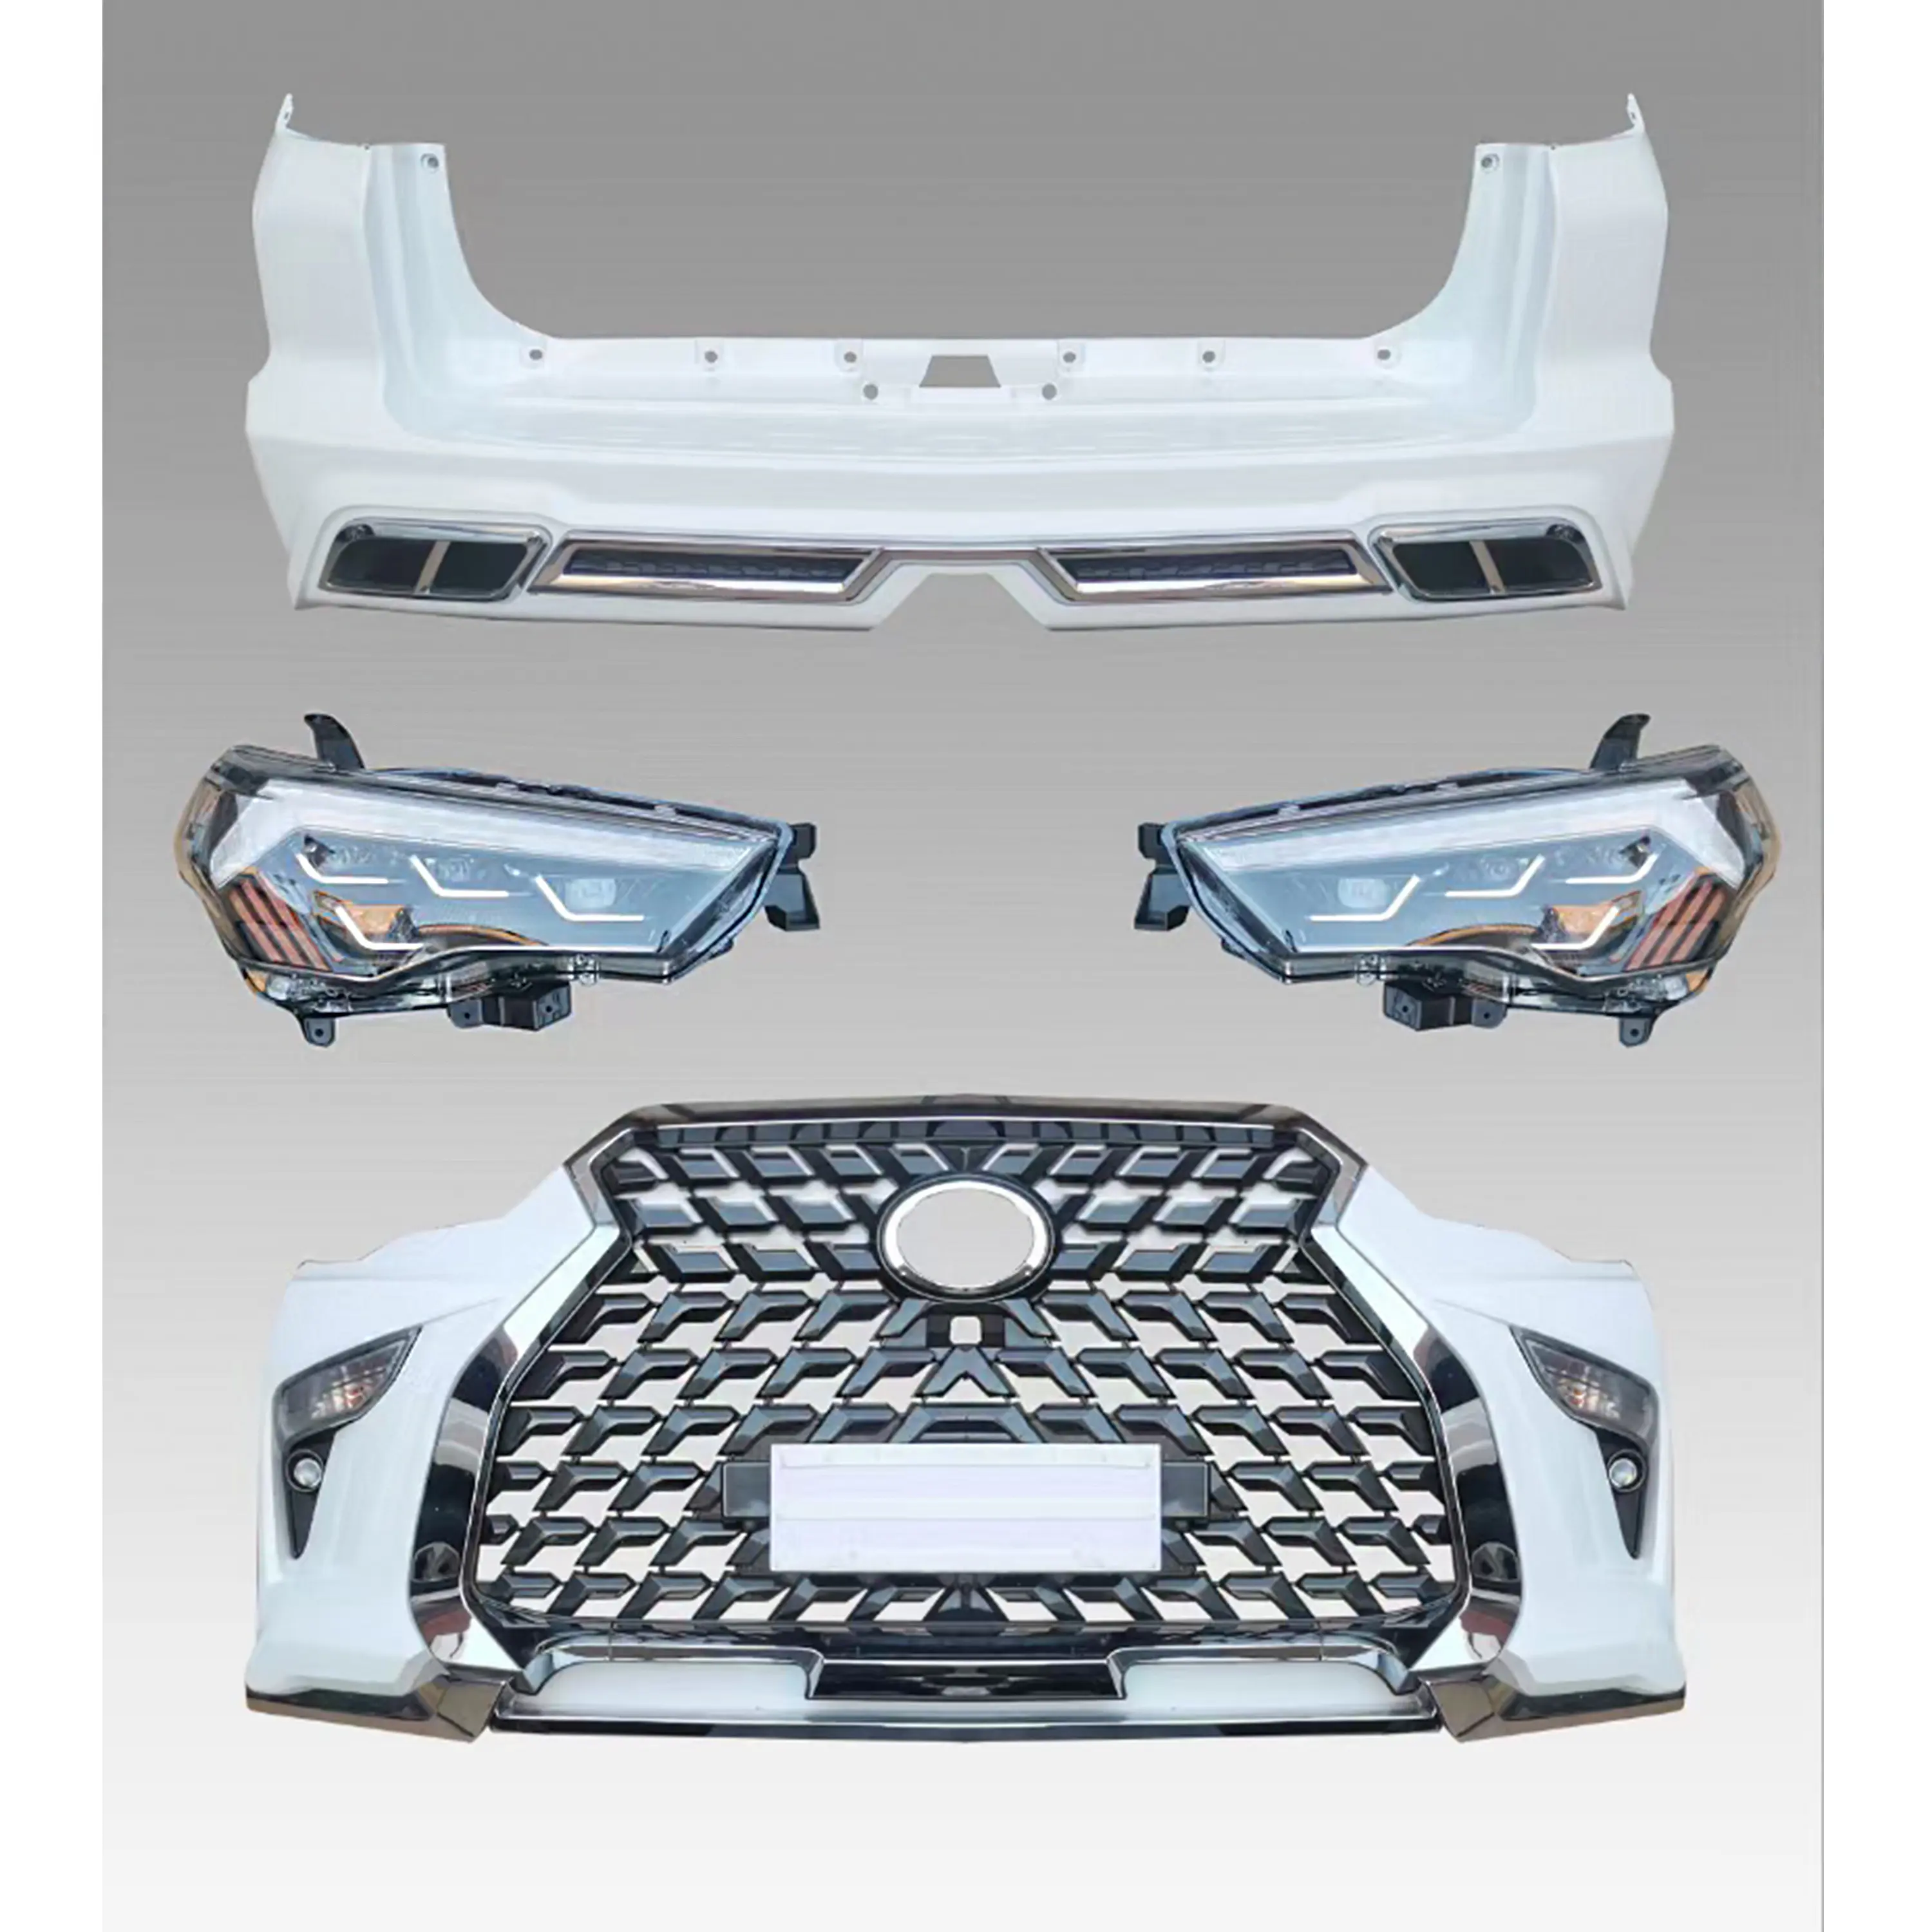 Araba tampon Grille için oyuncak ota 4Runner 2010-2020 yükseltme Lexus modeli ön tampon arka tampon Grille vücut kiti